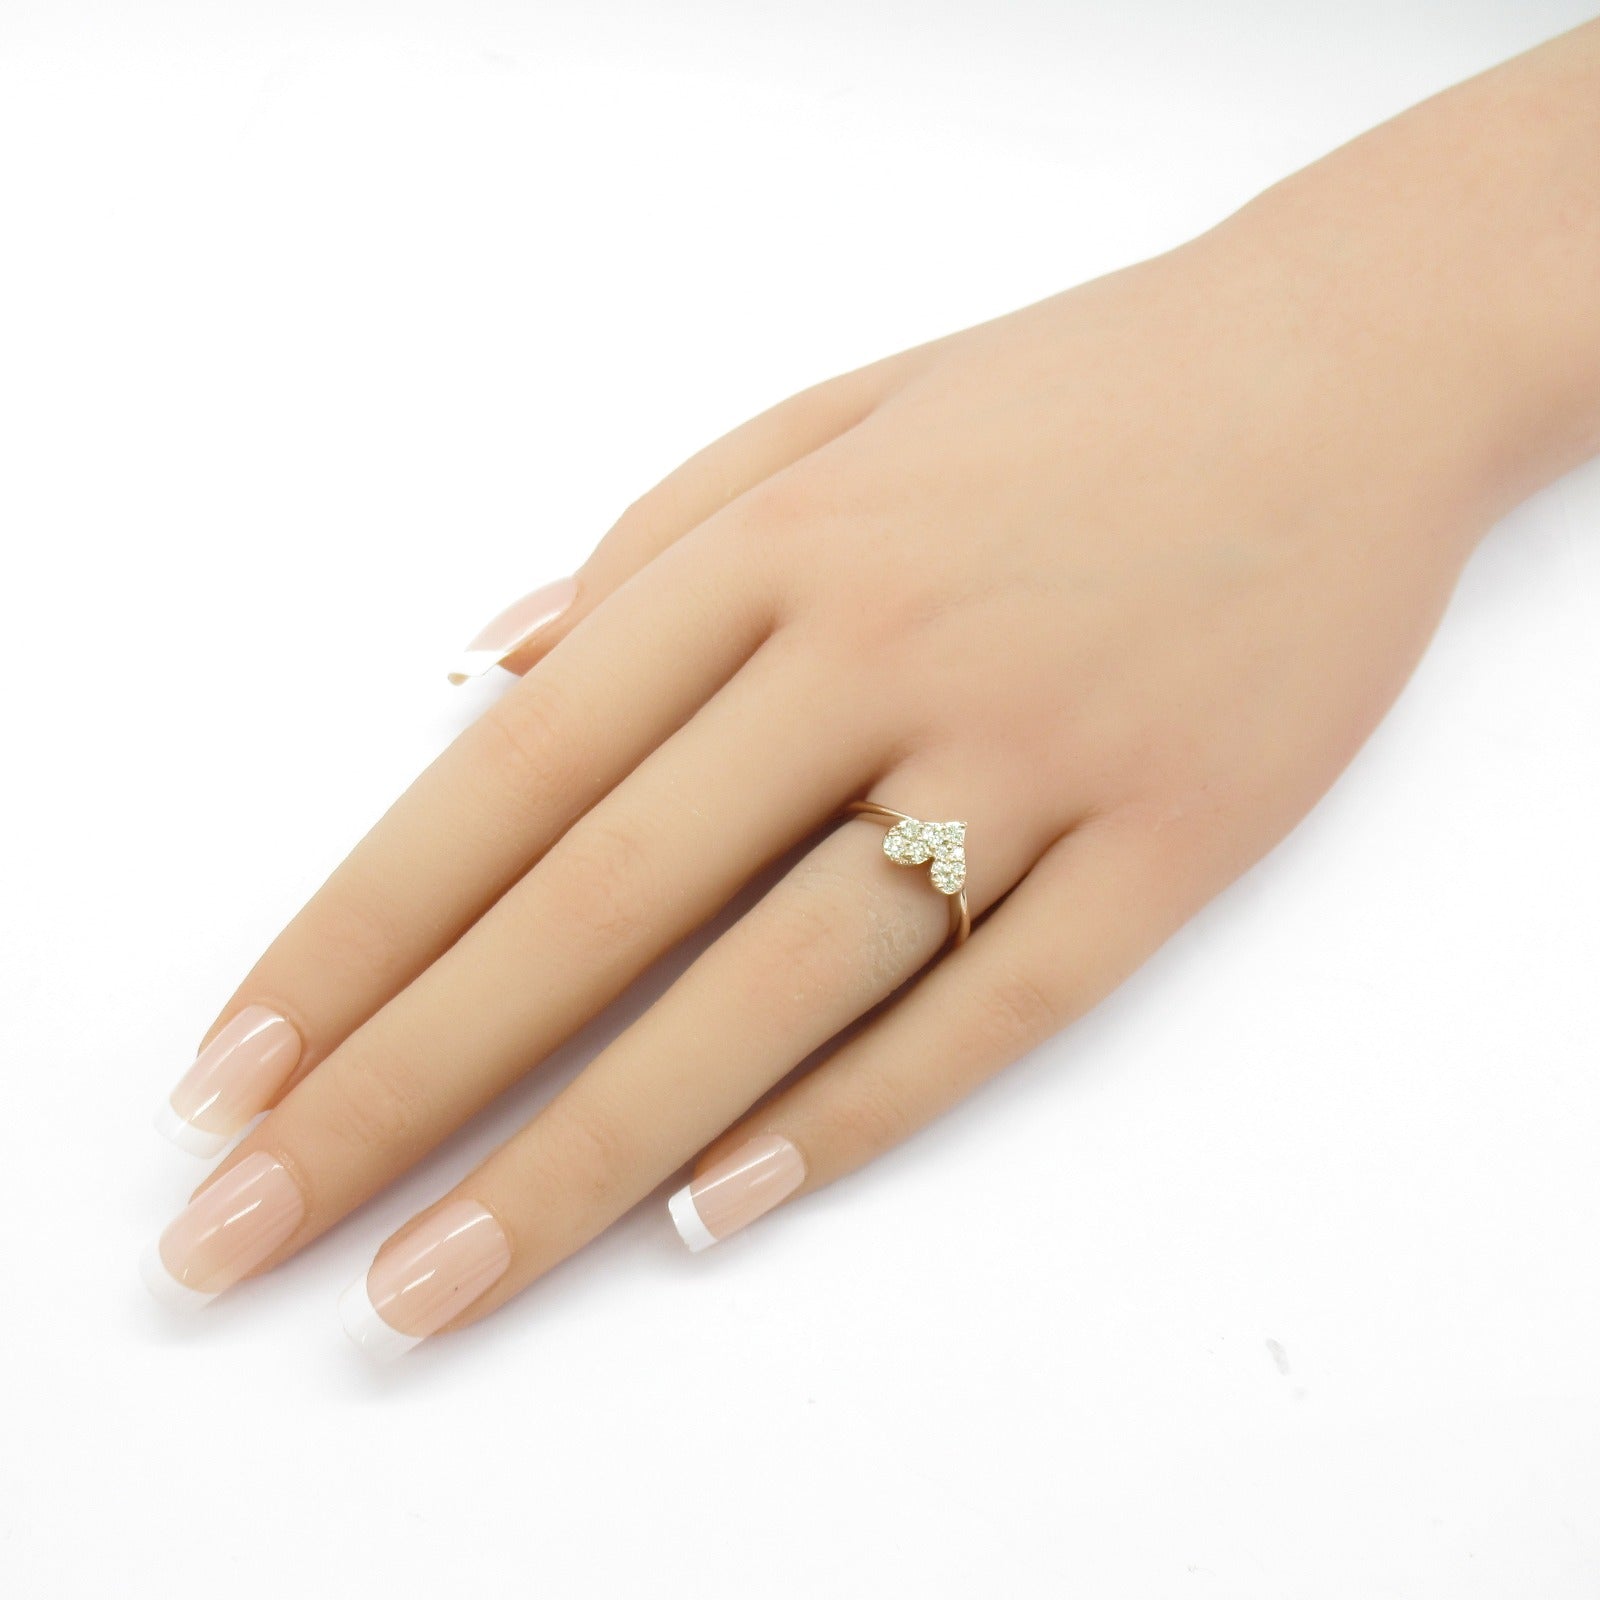 Jewelry Jewelry Diamond Ring Ring Ring Jewelry K18PG Diamond  Clear Diamond 3.1g